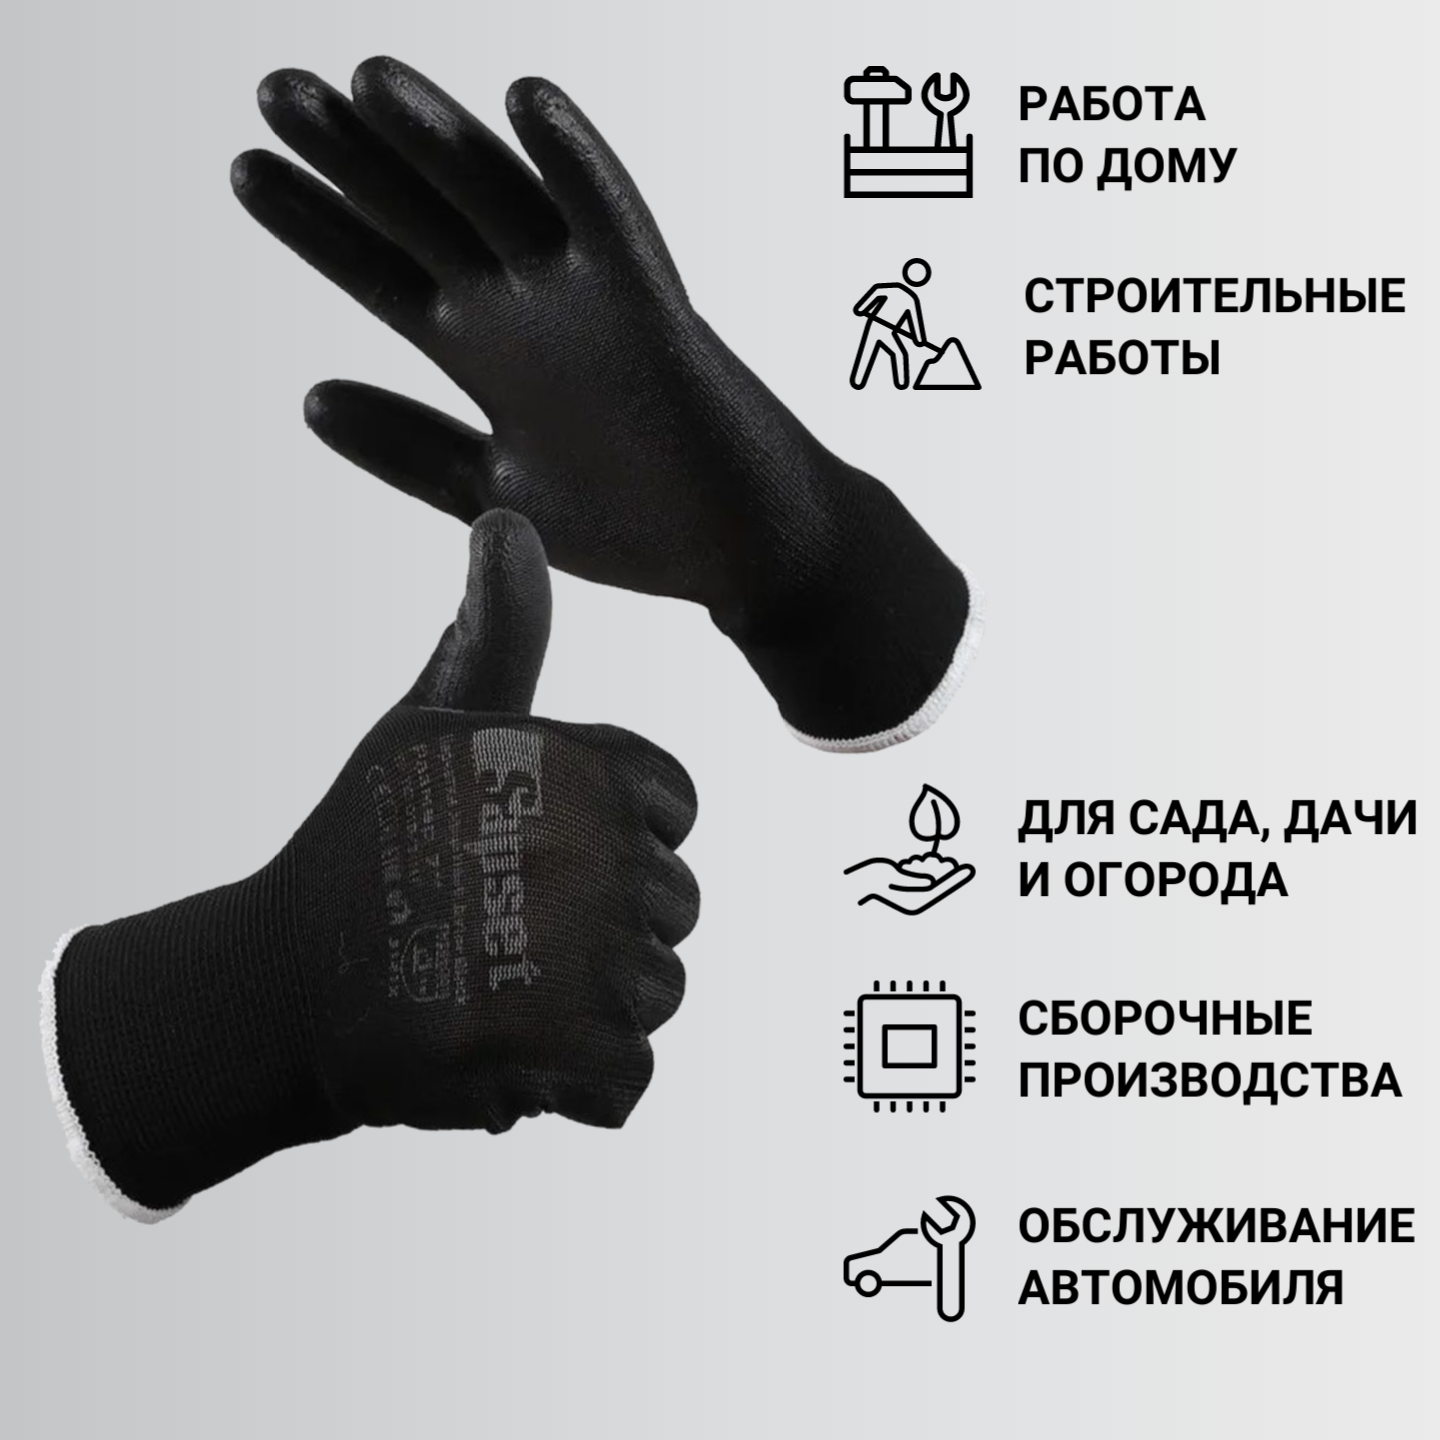 Перчатки рабочие с покрытием из полиуретана Sapset Avior Black размер S/7 - 5 пар